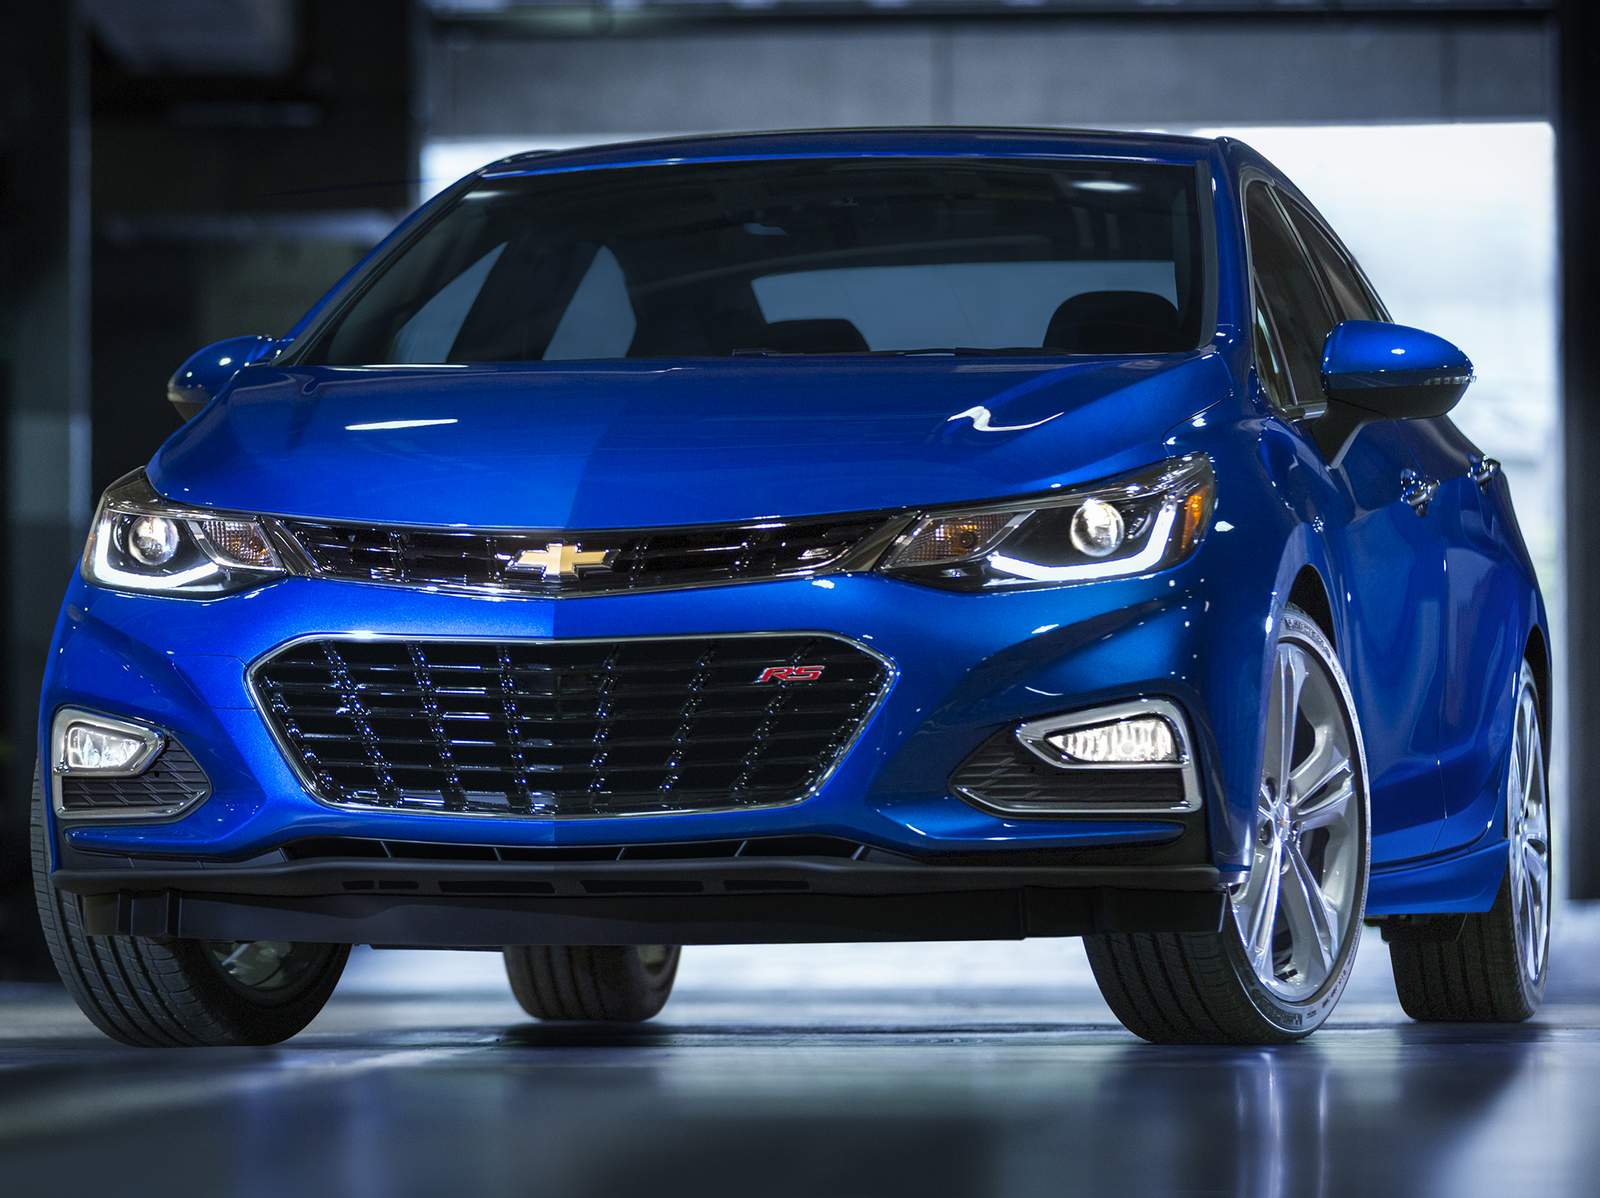 Novo Chevrolet Cruze 2016: fotos, detalhes e especificações